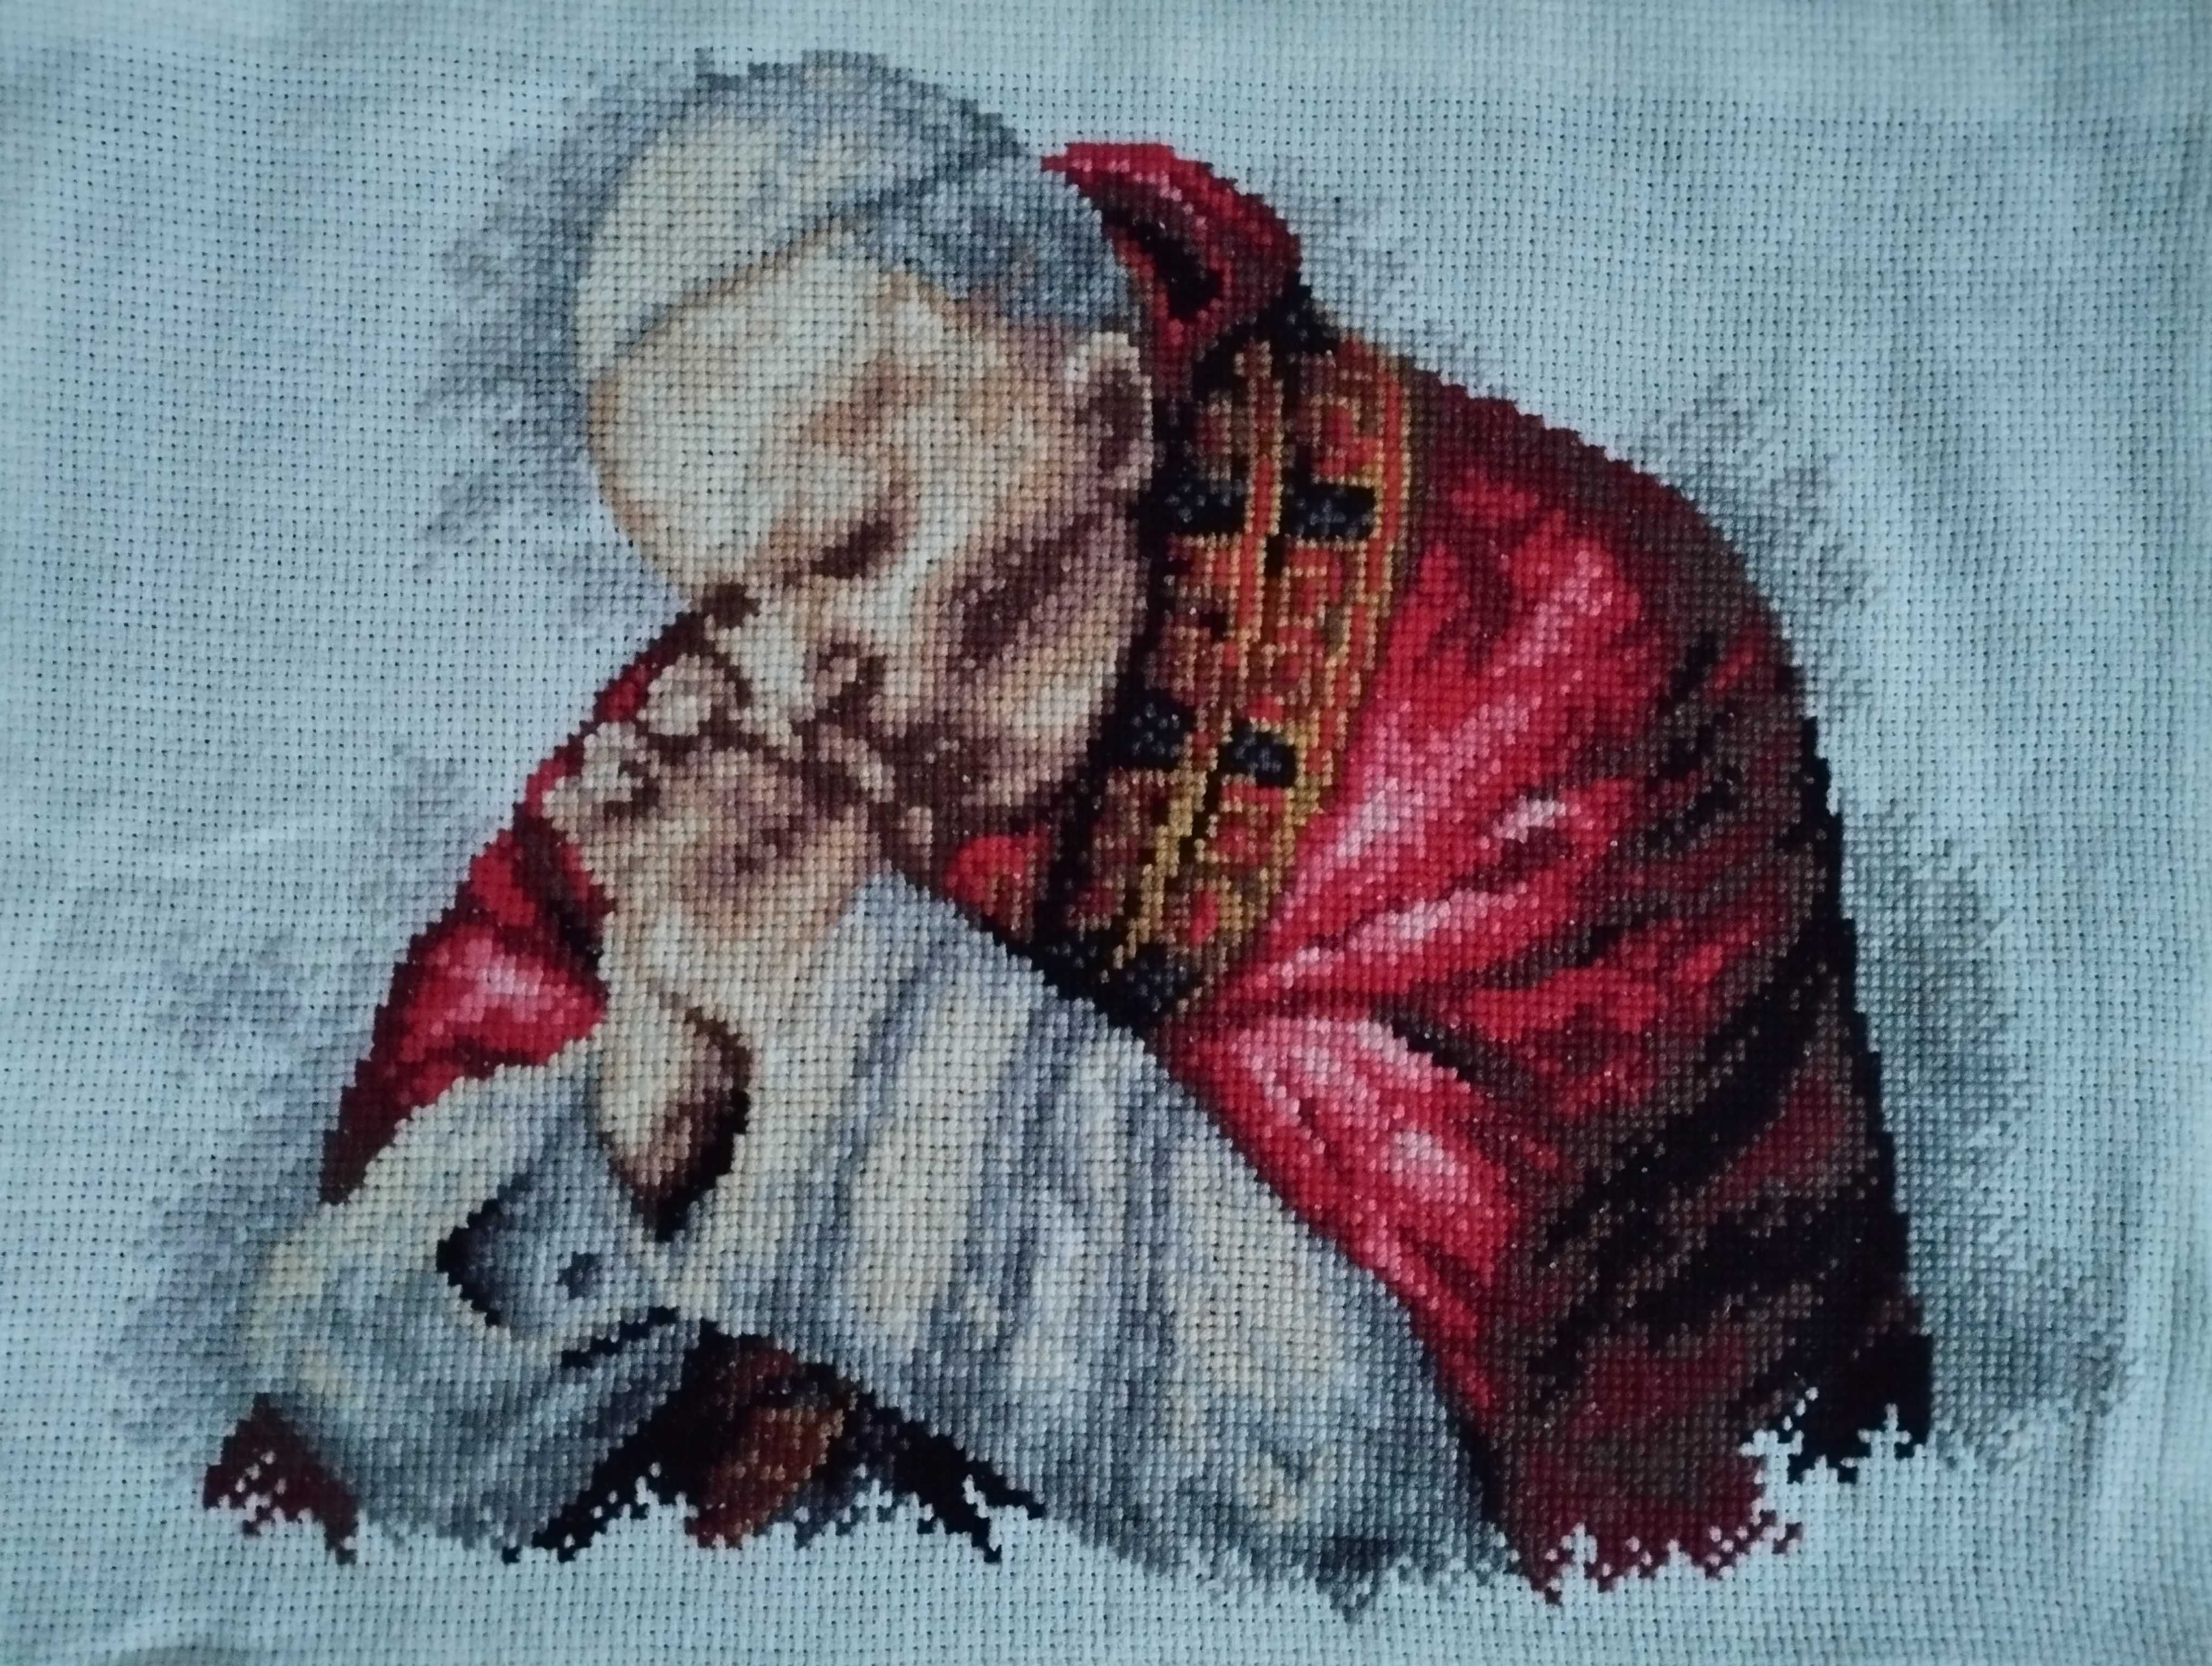 Jan Paweł II papież w czerwonej szacie - obraz haftowany